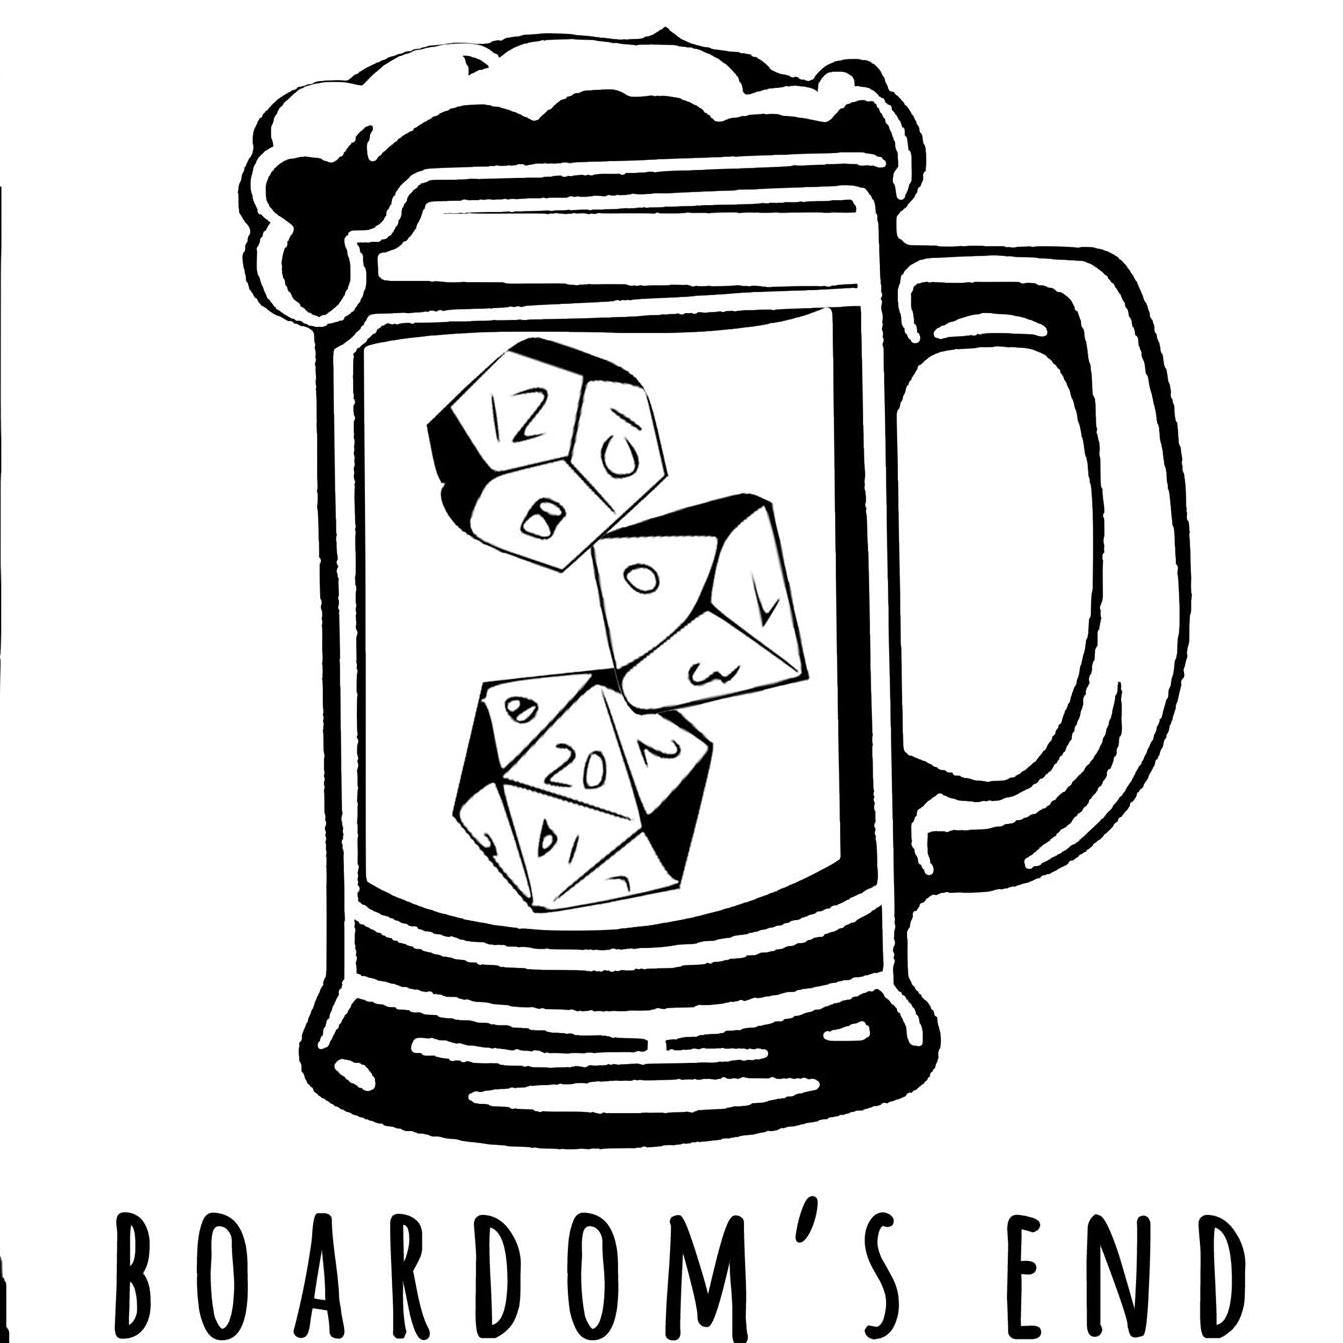 Ashley's Pub, Boardom's End